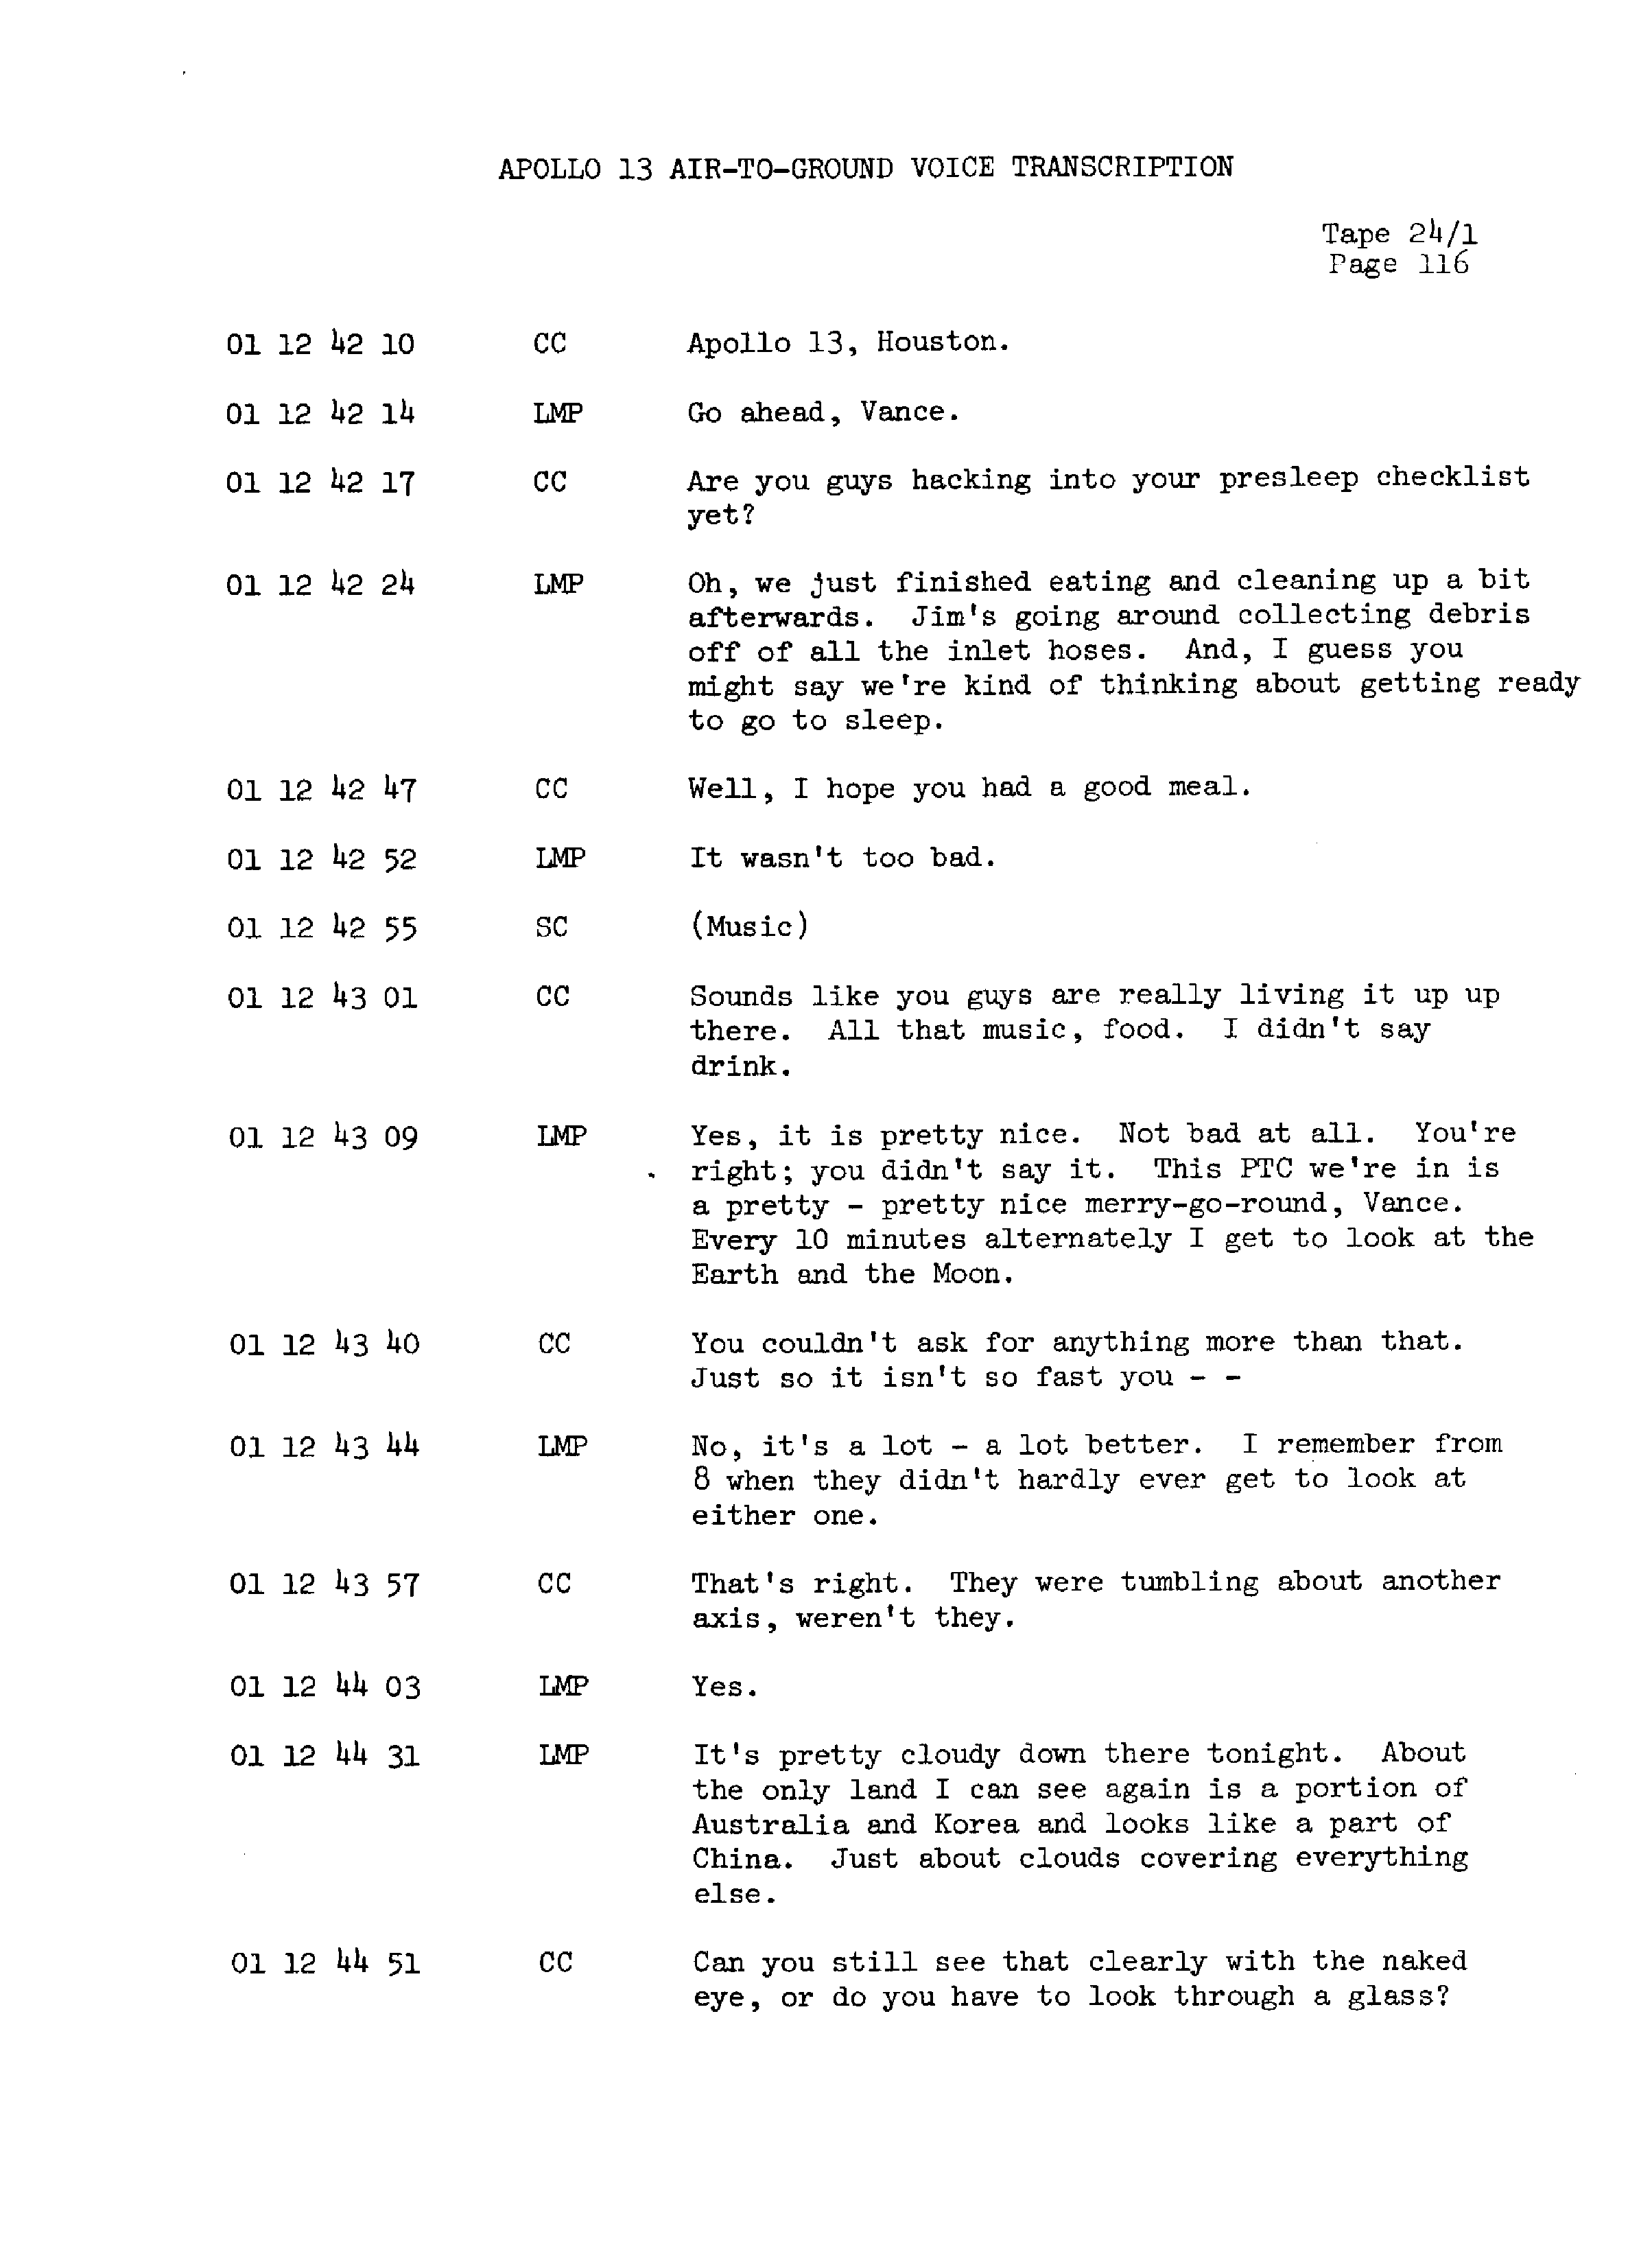 Page 123 of Apollo 13’s original transcript